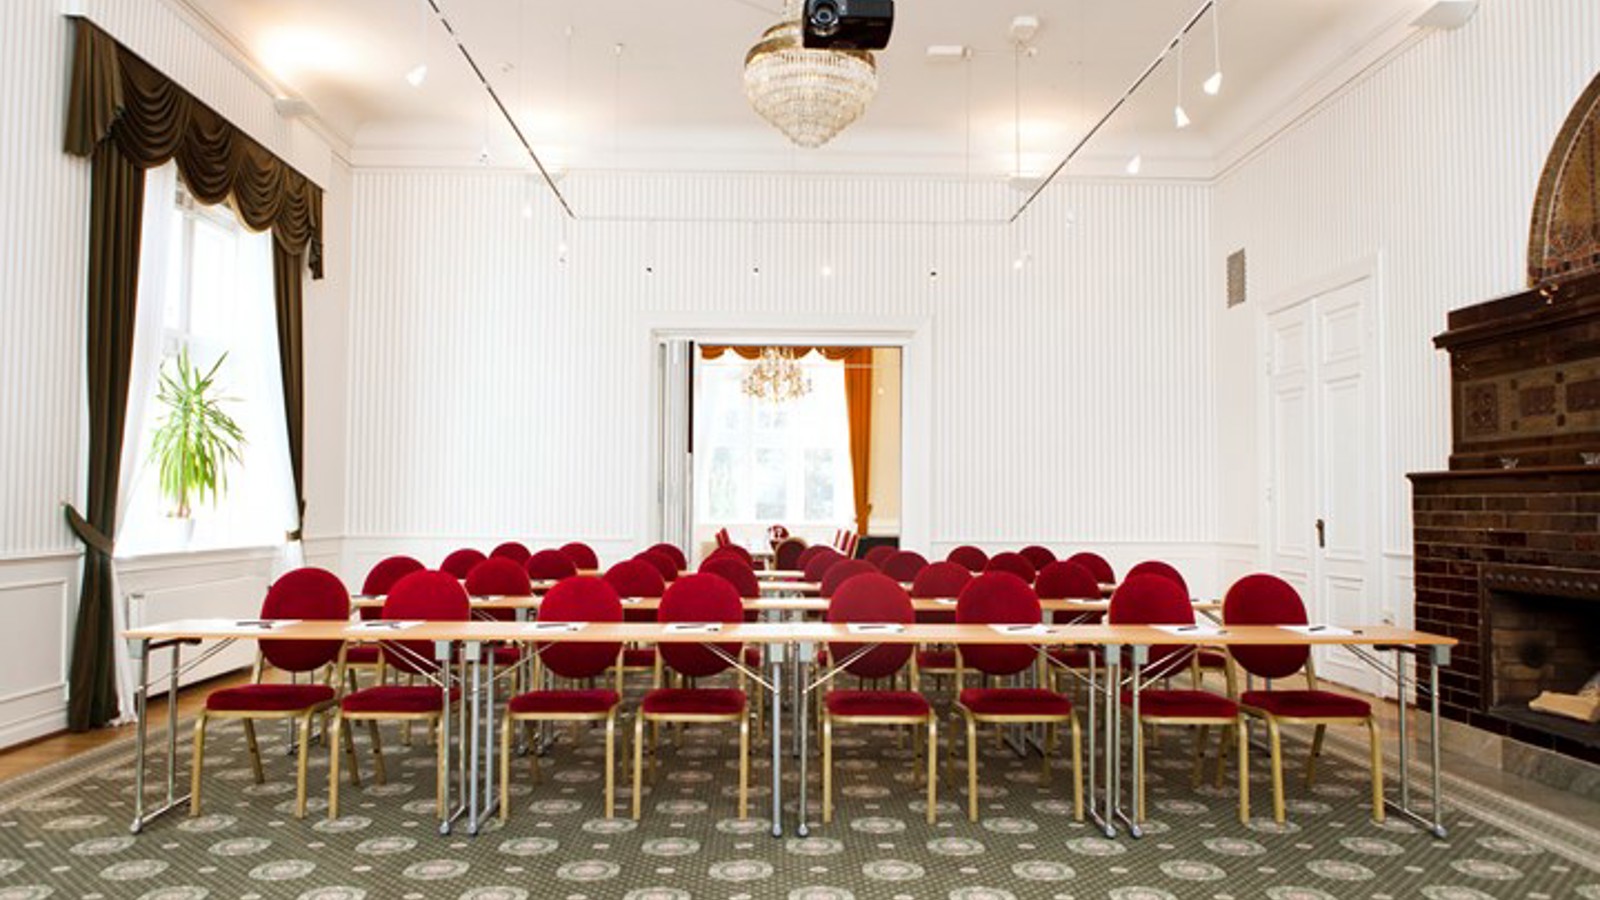 Konferensrum med skolsittning, röda stolar, vita väggar och grönmönstrad matta